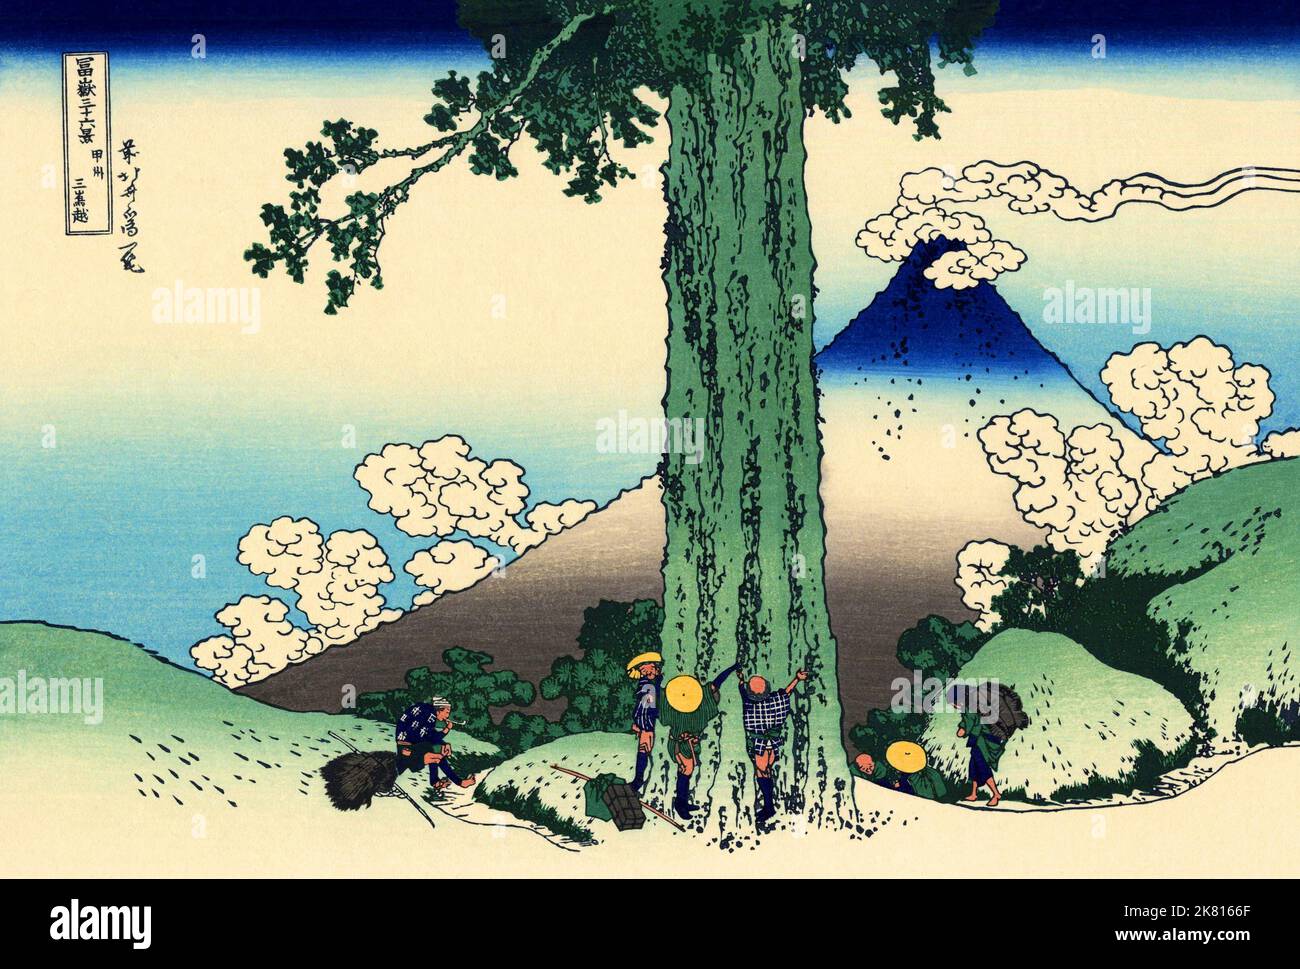 Japan: ‘Mishima Pass in der Provinz Kai’. Ukiyo-e Holzschnitt aus der Serie ‘36 Ansichten des Fuji’ von Katsushika Hokusai (31. Oktober 1760 - 10. Mai 1849), c. 1830. ‘36 Views of Mount Fuji’ ist eine ‘„Sukiyo-e“-Serie großer Holzschnitte der Künstlerin Katsushika Hokusai. Die Serie zeigt den Fuji in unterschiedlichen Jahreszeiten und Wetterbedingungen an verschiedenen Orten und Entfernungen. Es besteht tatsächlich aus 46 Drucken, die zwischen 1826 und 1833 entstanden sind. Die ersten 36 wurden in die Originalpublikation aufgenommen, und aufgrund ihrer Popularität wurden nach der Originalpublikation 10 weitere hinzugefügt. Stockfoto